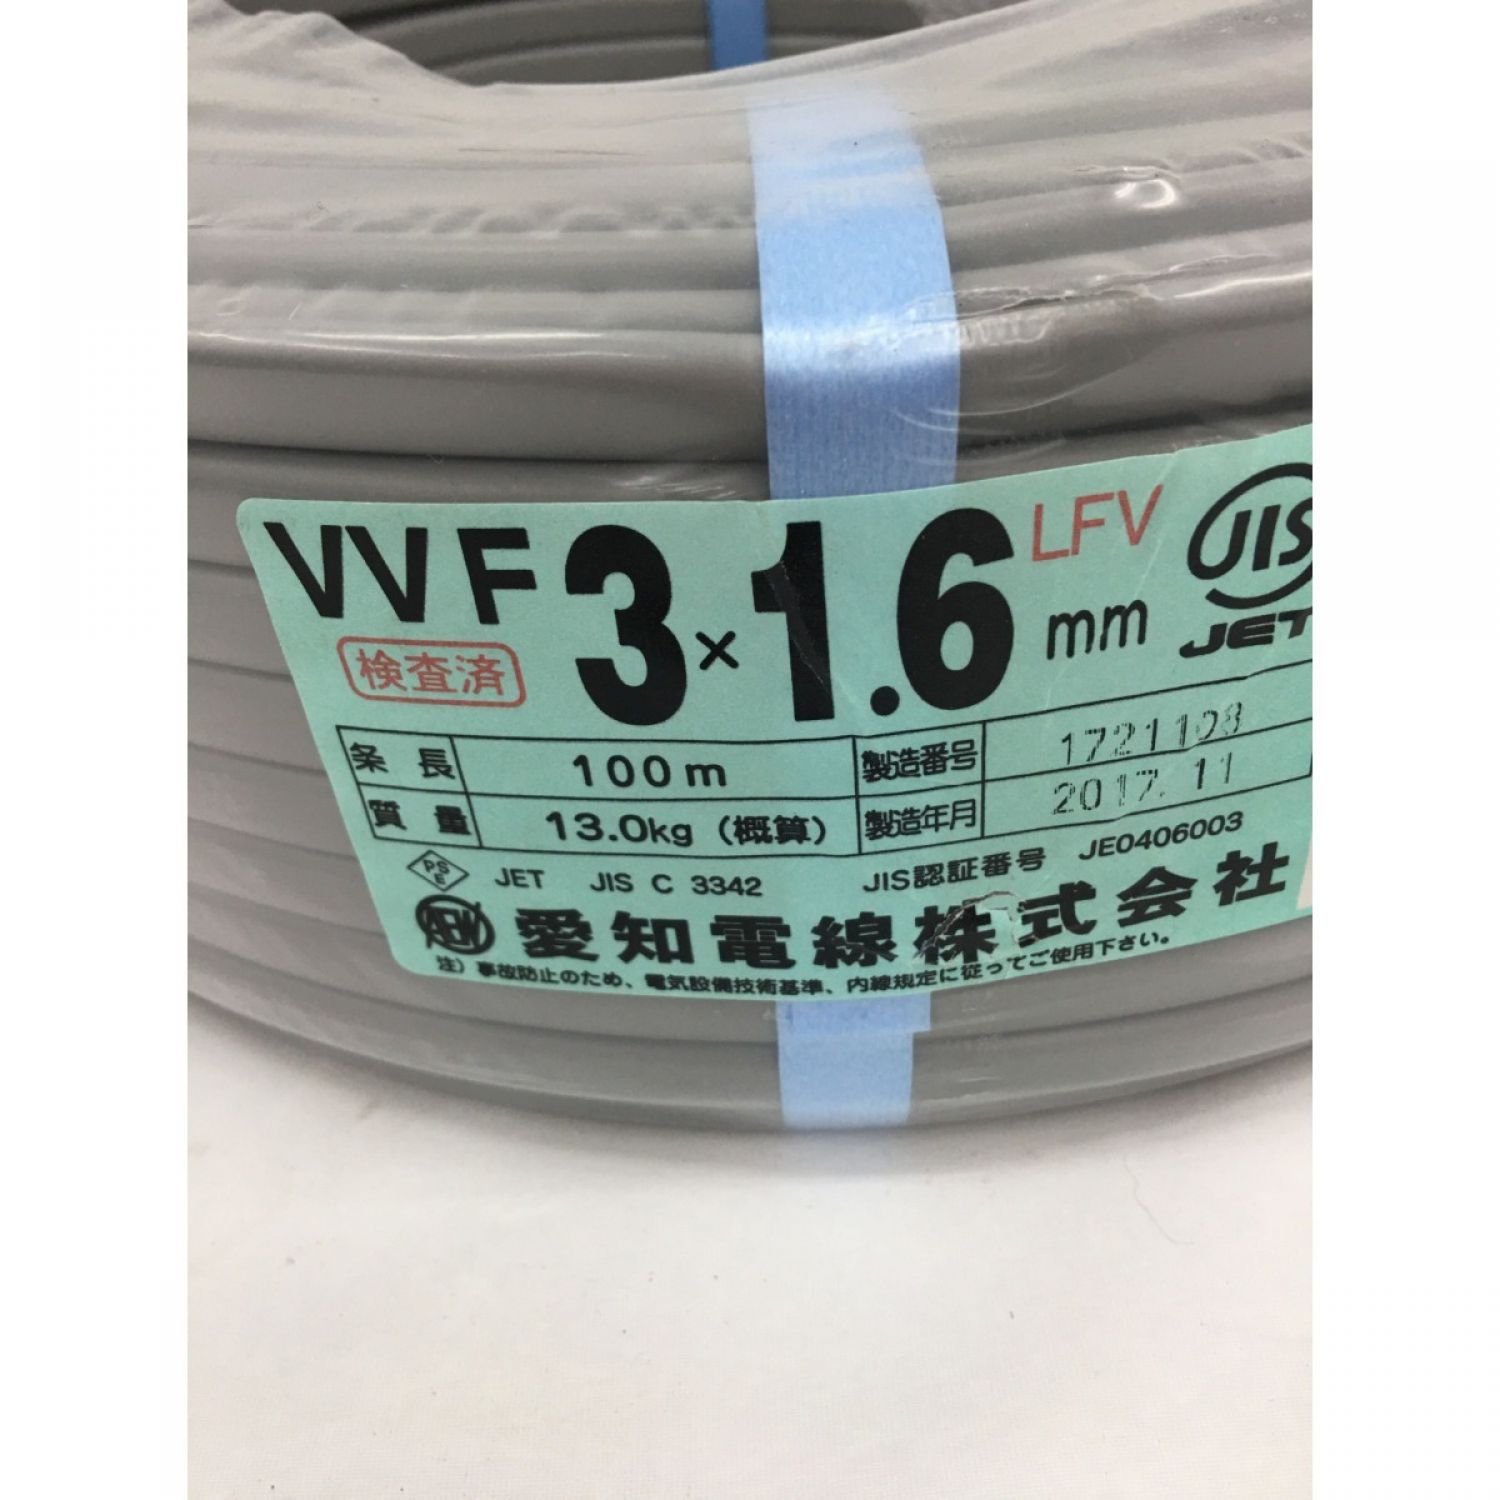 売りお得セール VVF ケーブル 3 ×1.6 mm 100m 愛知 電線 株式会社 電気